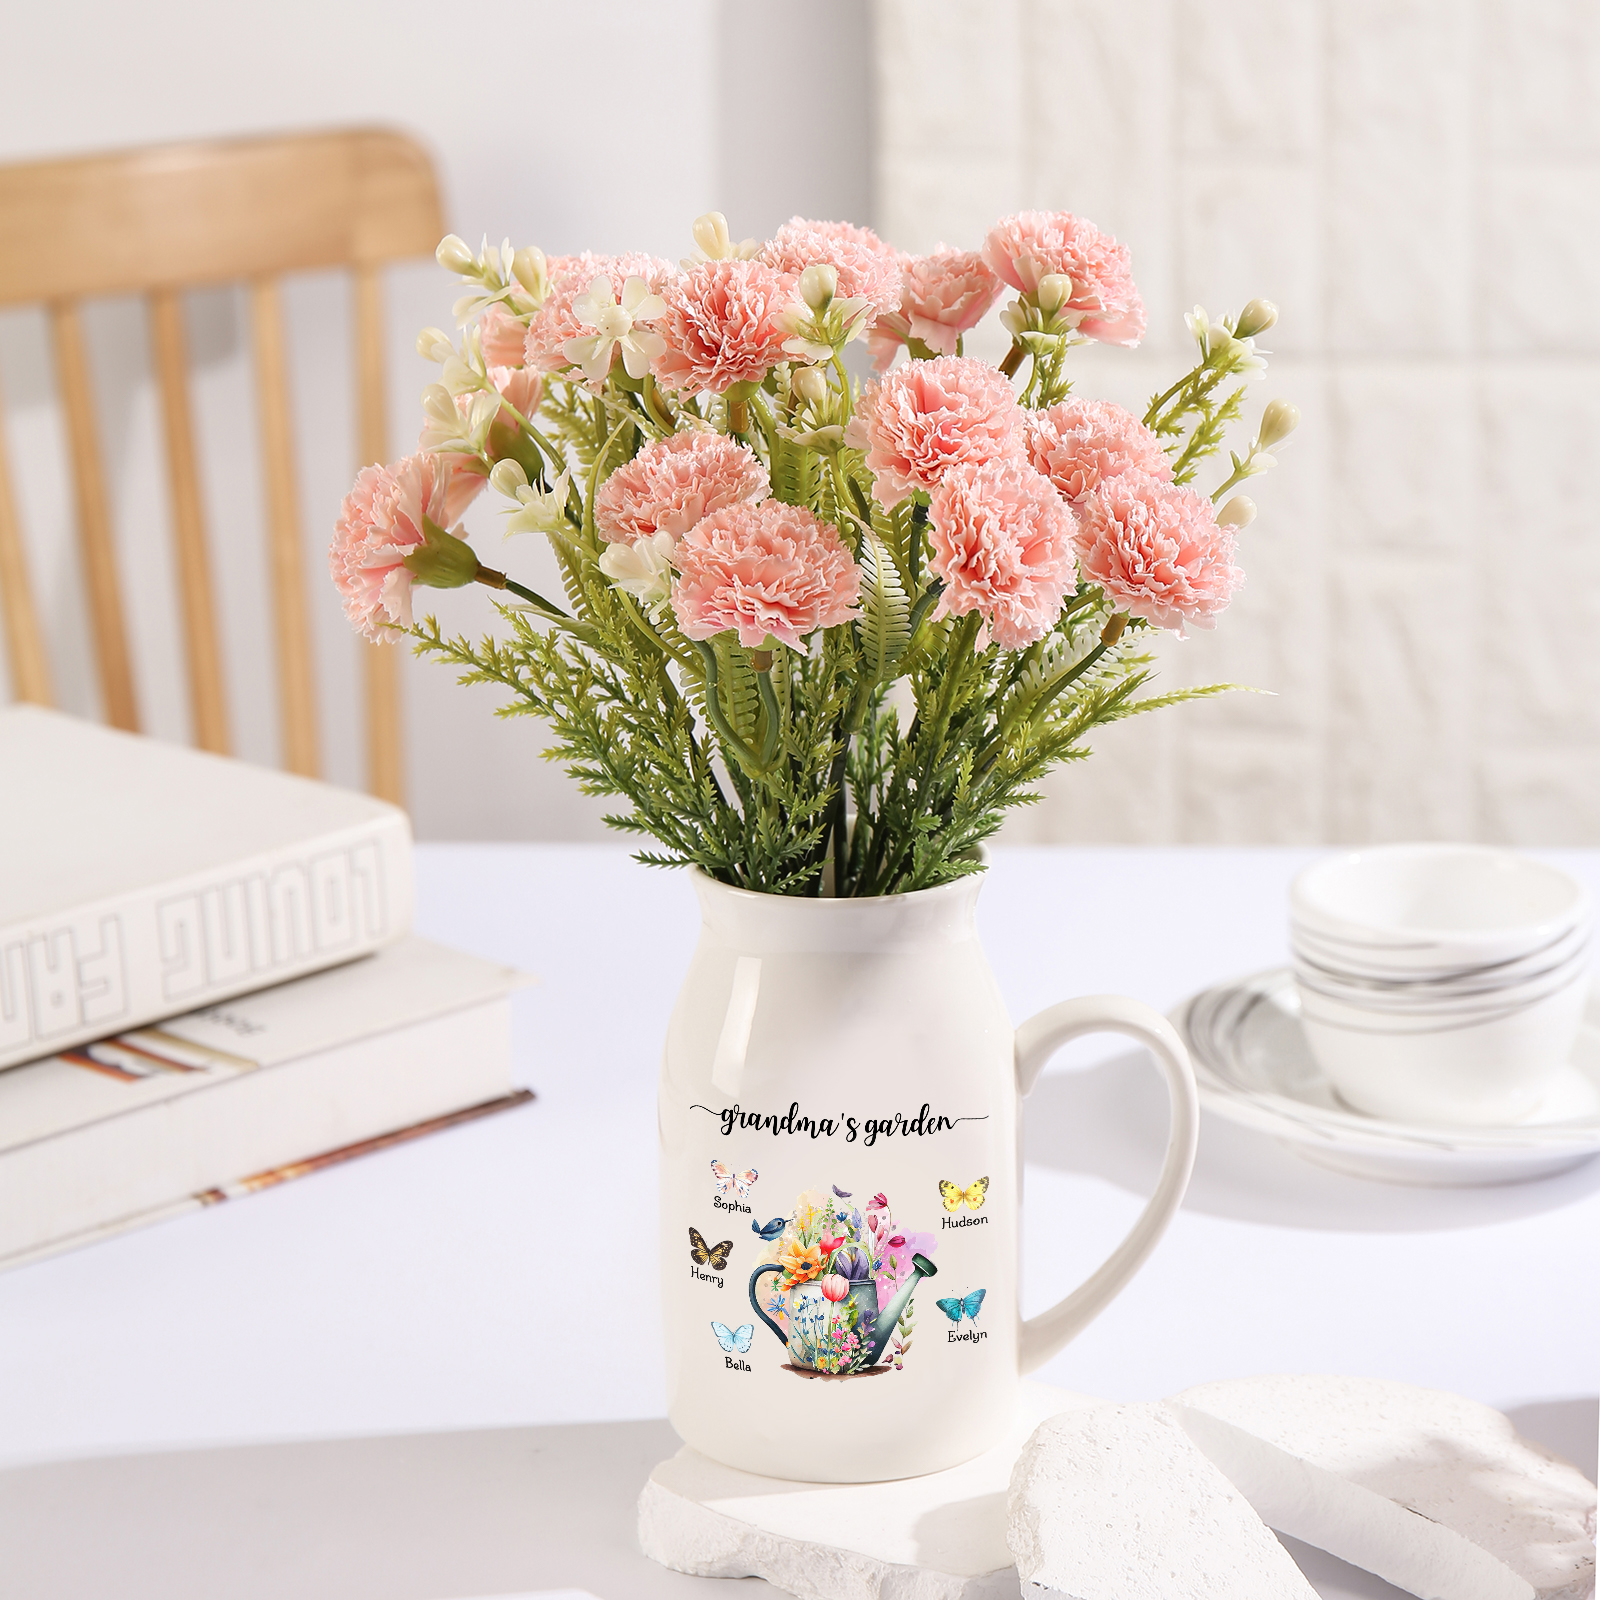 5 Names - Personalized Name "Grandma's Garden" Ceramic Vase as a Gift for Grandma